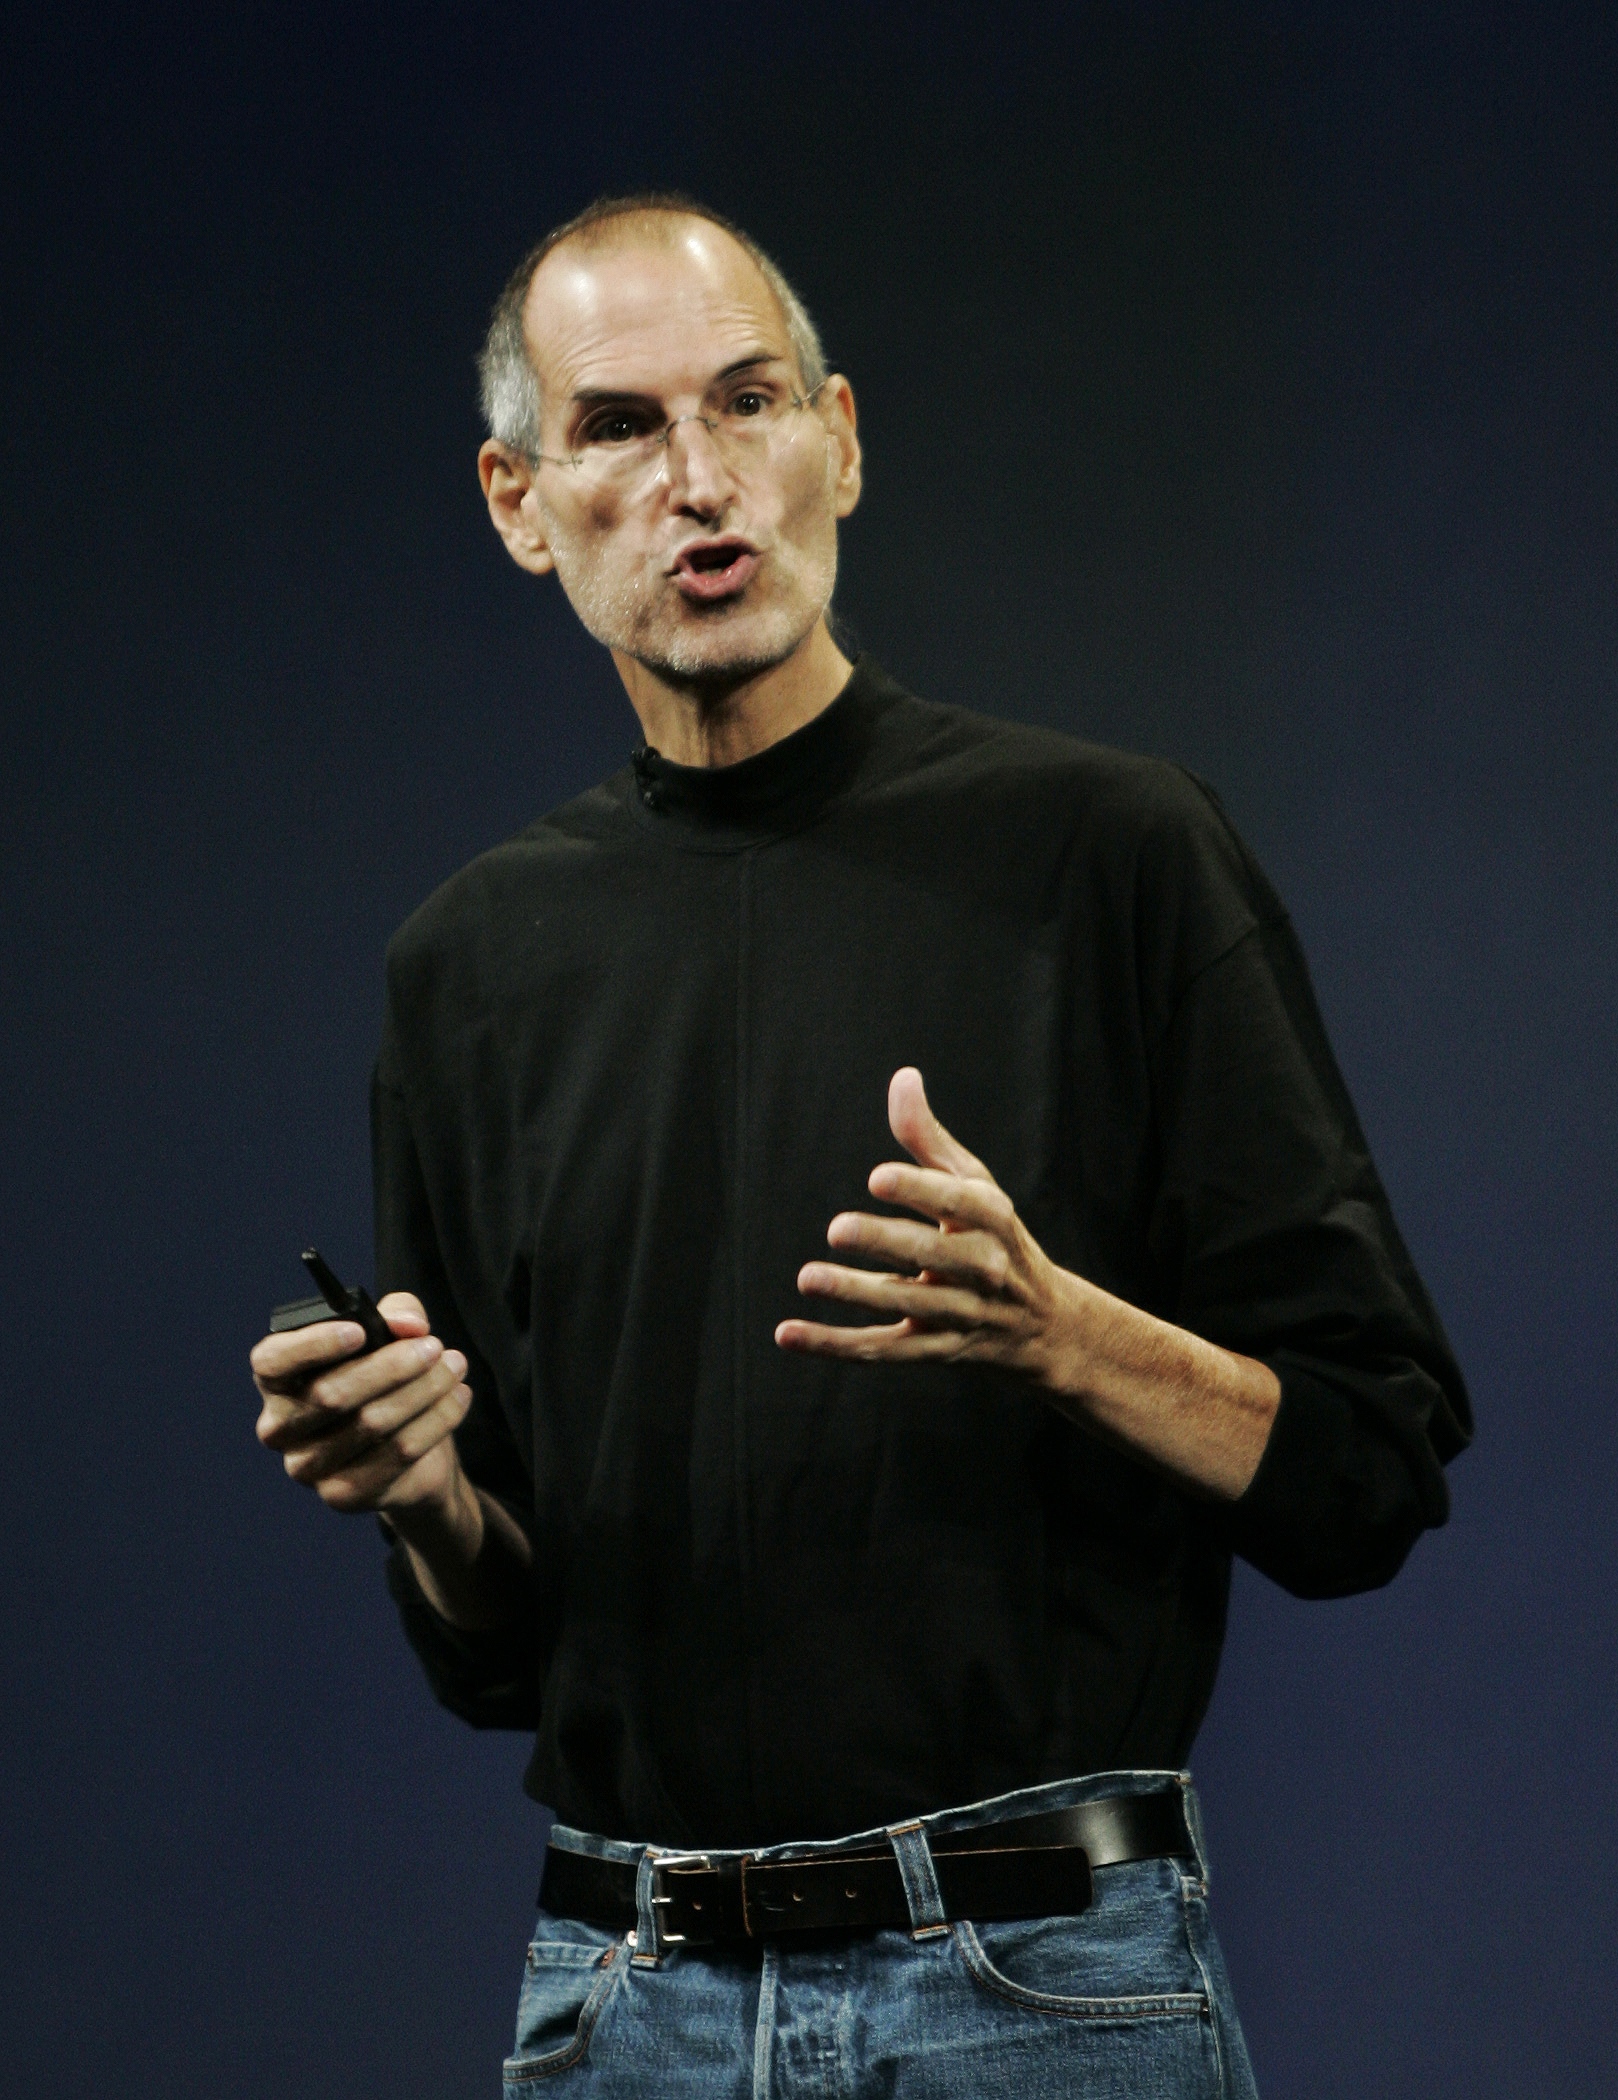 Applechefen hävdar att en Spotifylansering i USA kan drabba den traditionella musikförsäljningen. 

Bilden visar Apple vd:n Steve Jobs.